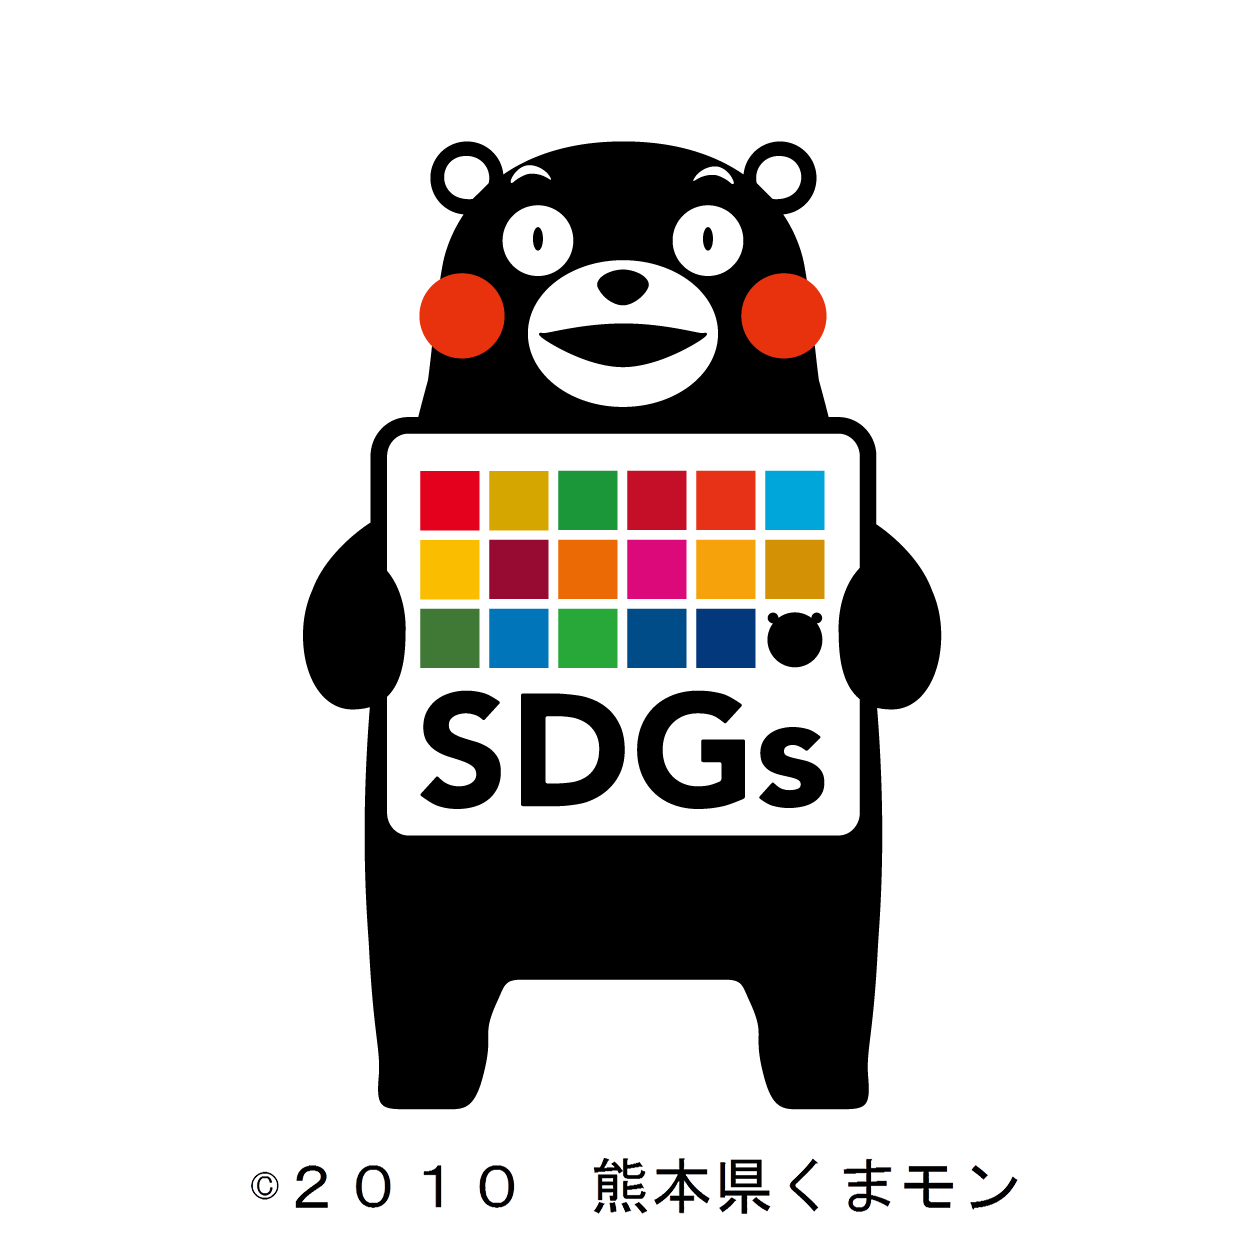 熊本県SDGs 登録制度